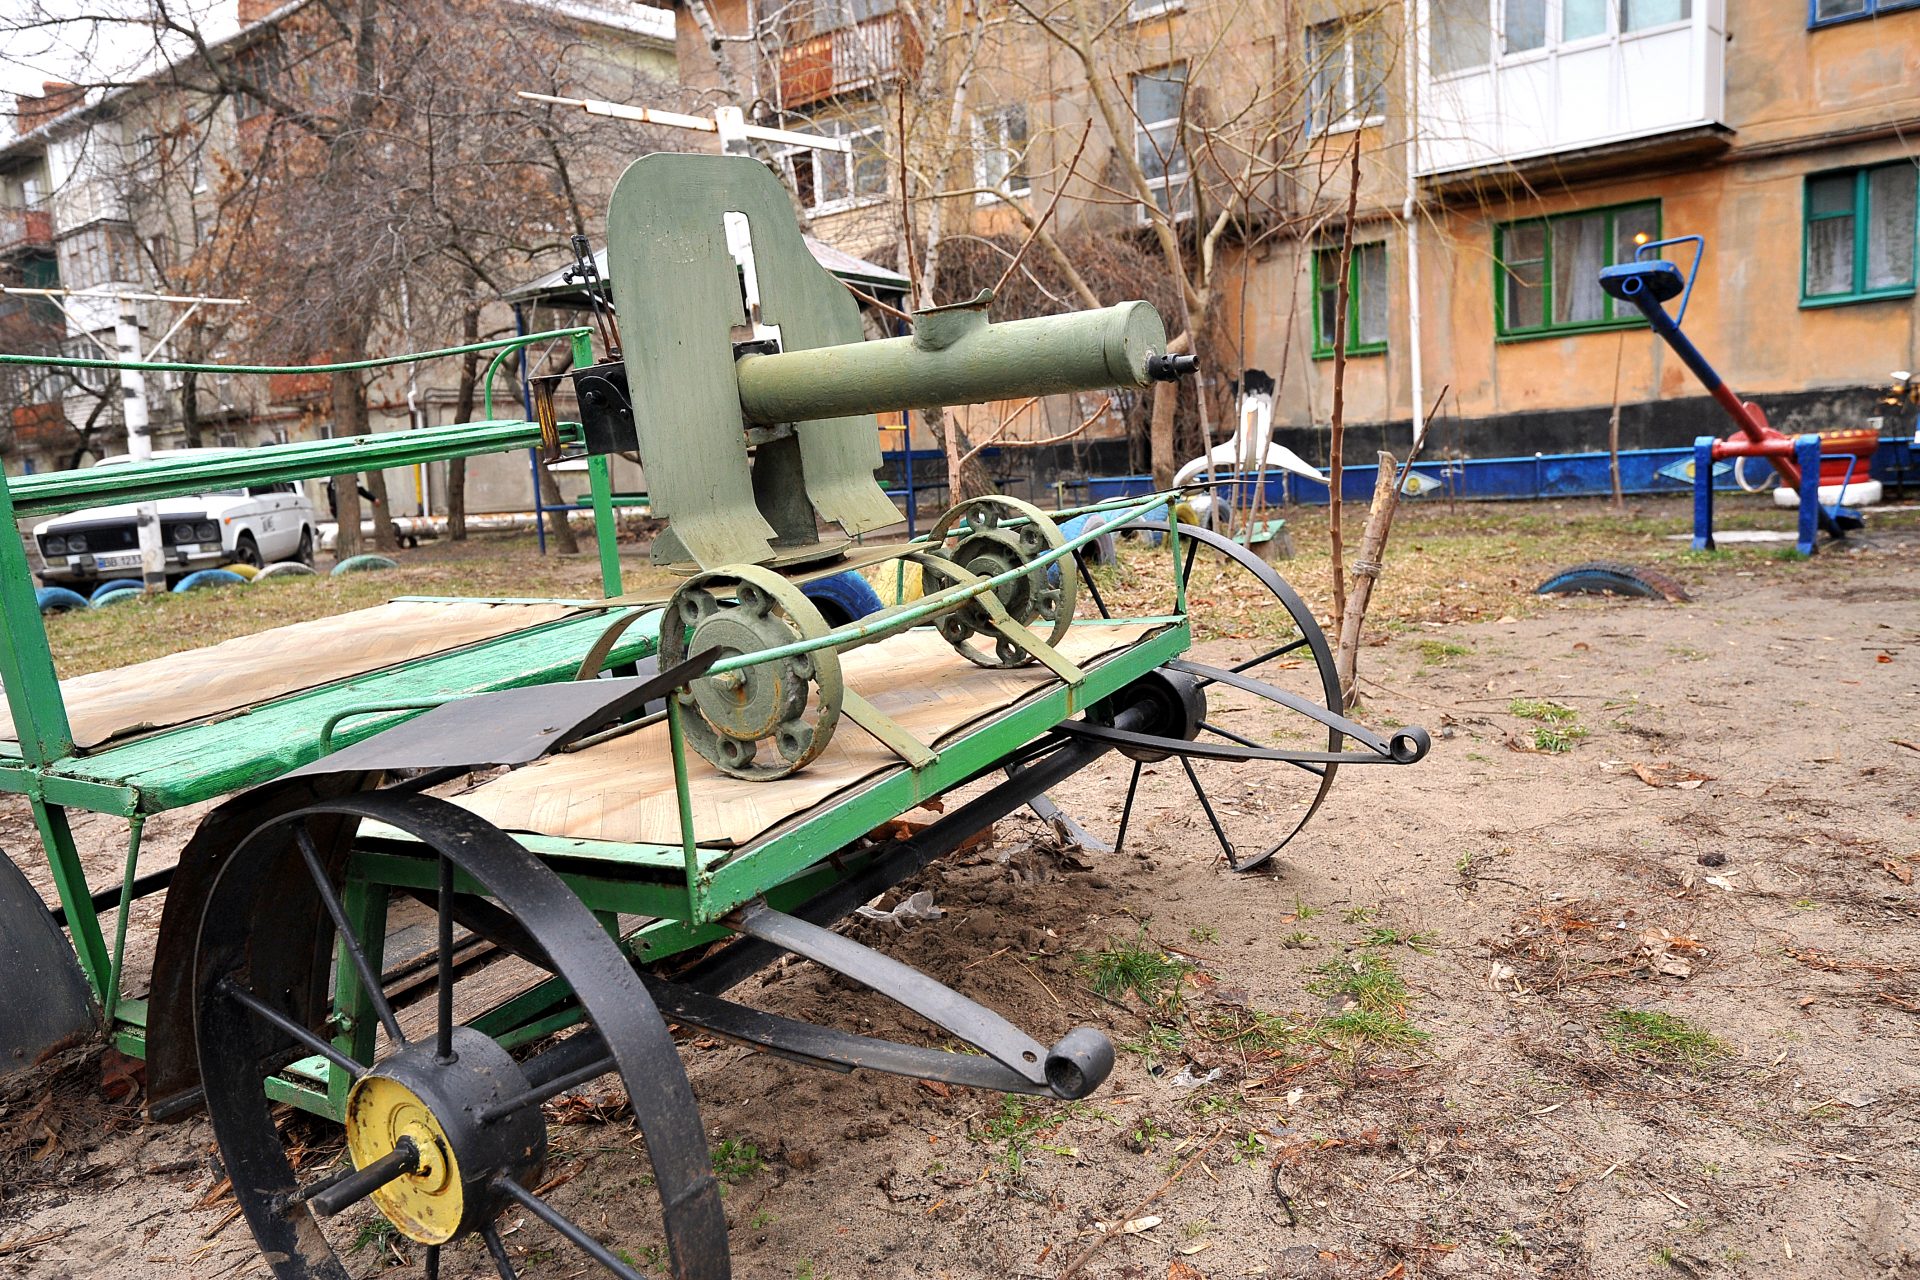 Voici pourquoi l'Ukraine utilise encore une mitrailleuse vieille de 140 ans